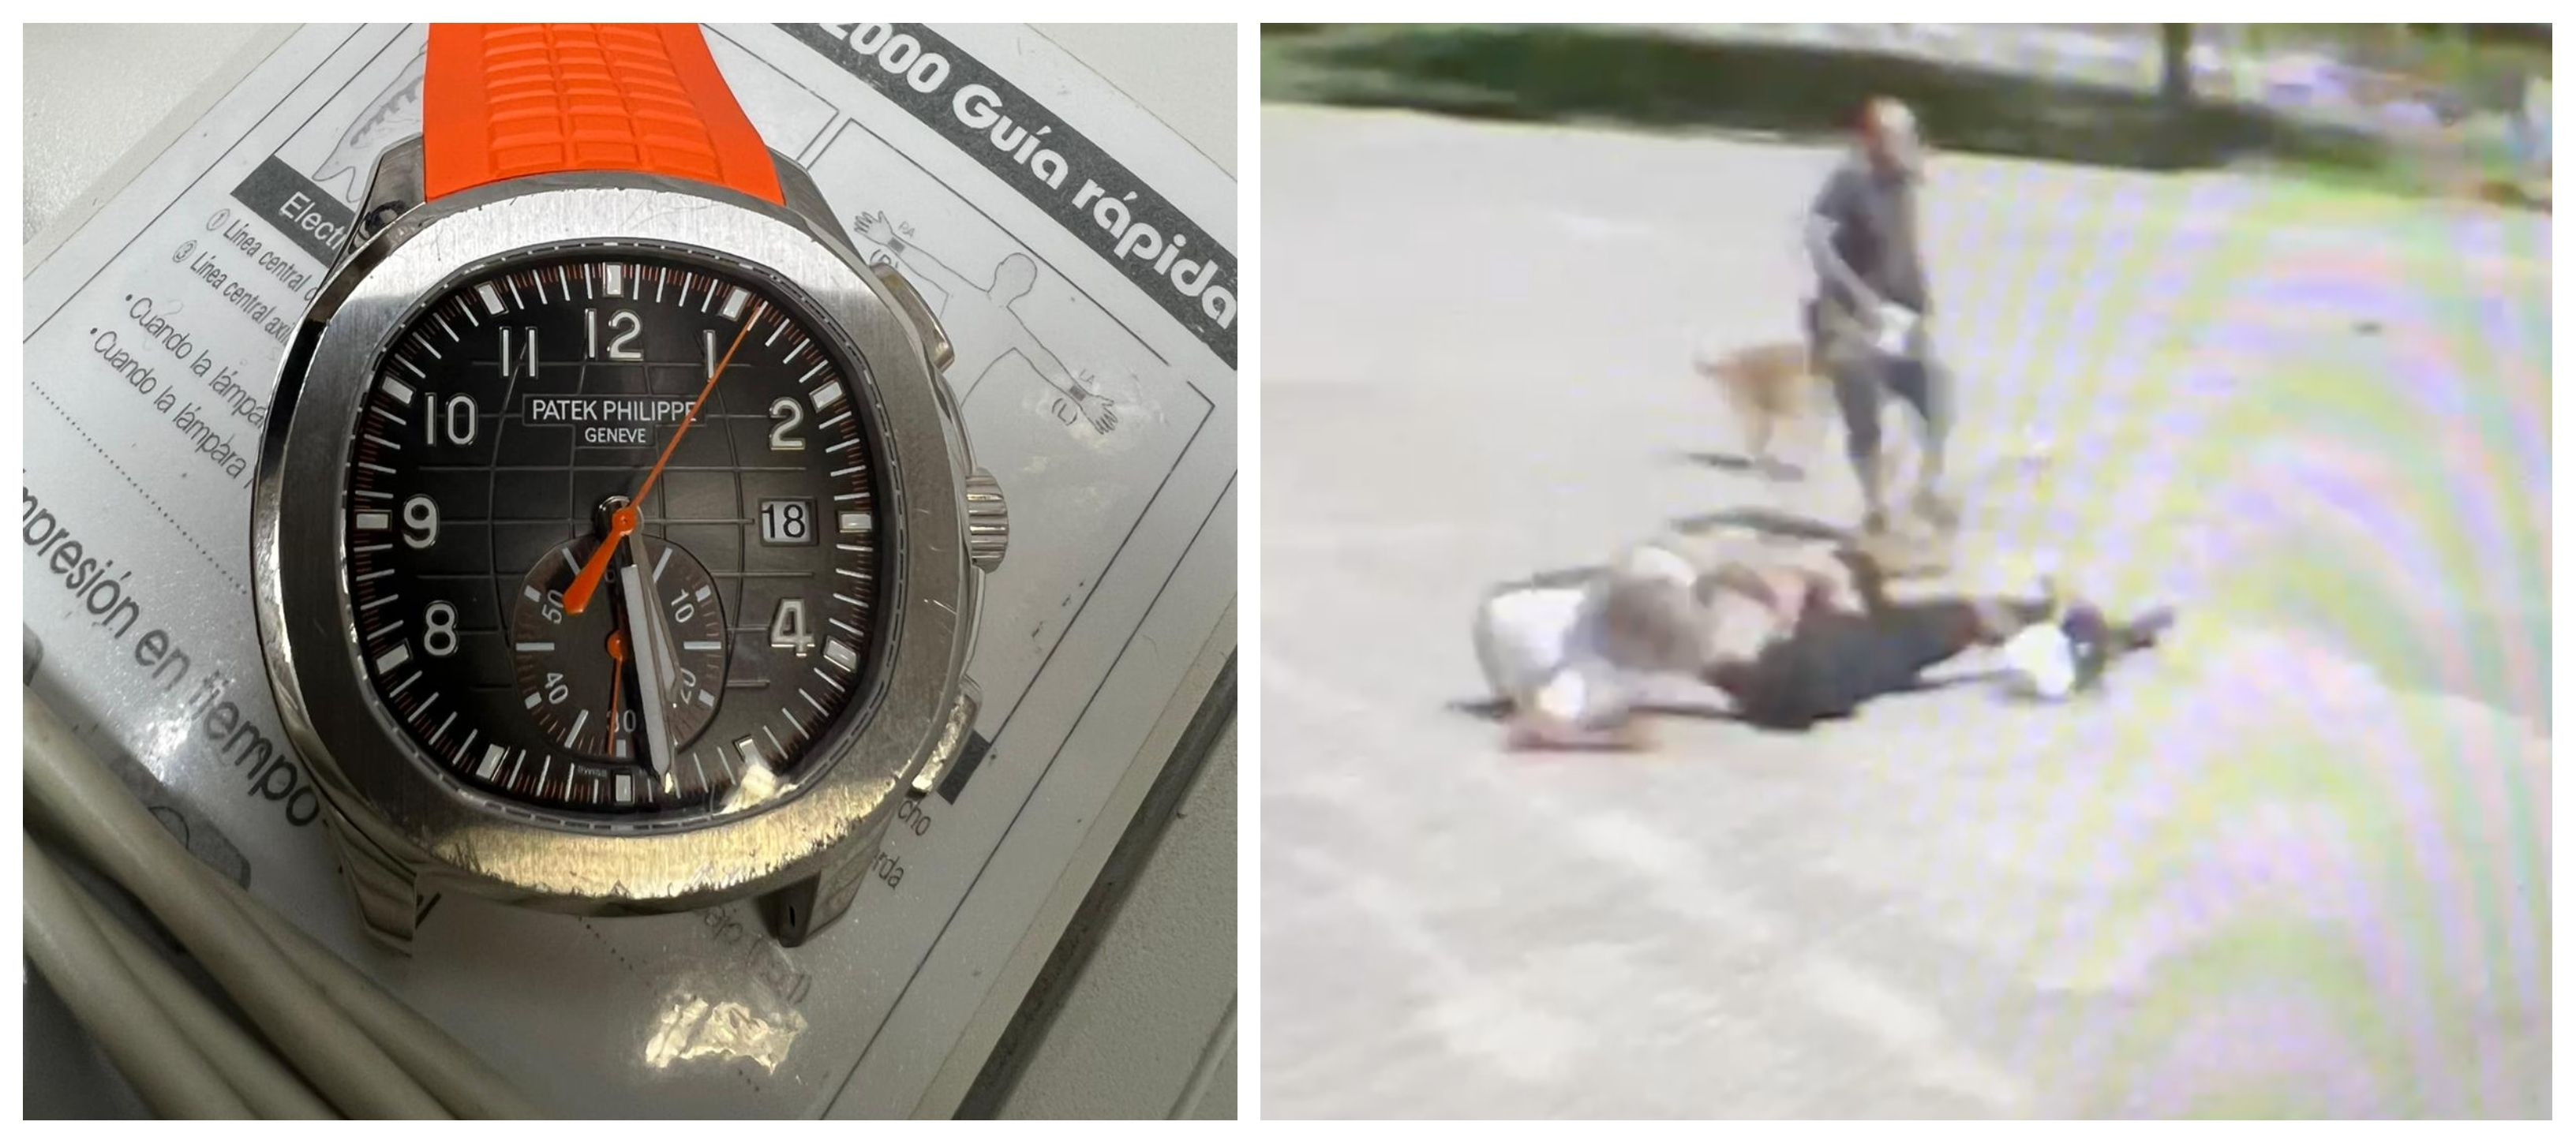 El reloj que el ladrón intentó robar en Diagonal Mar y la víctima capturándole / CEDIDAS